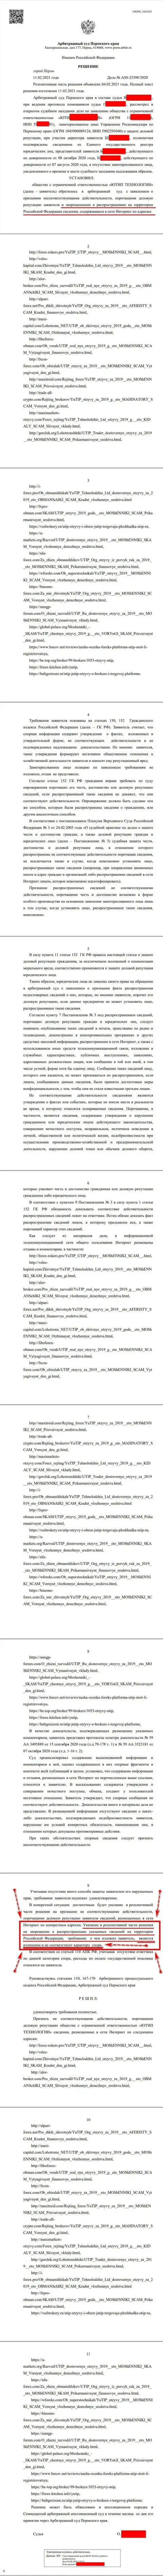 Решение Арбитражного суда города Перми по судебному иску шулеров ЮТИП в отношении сайта Форекс Брокерс Про